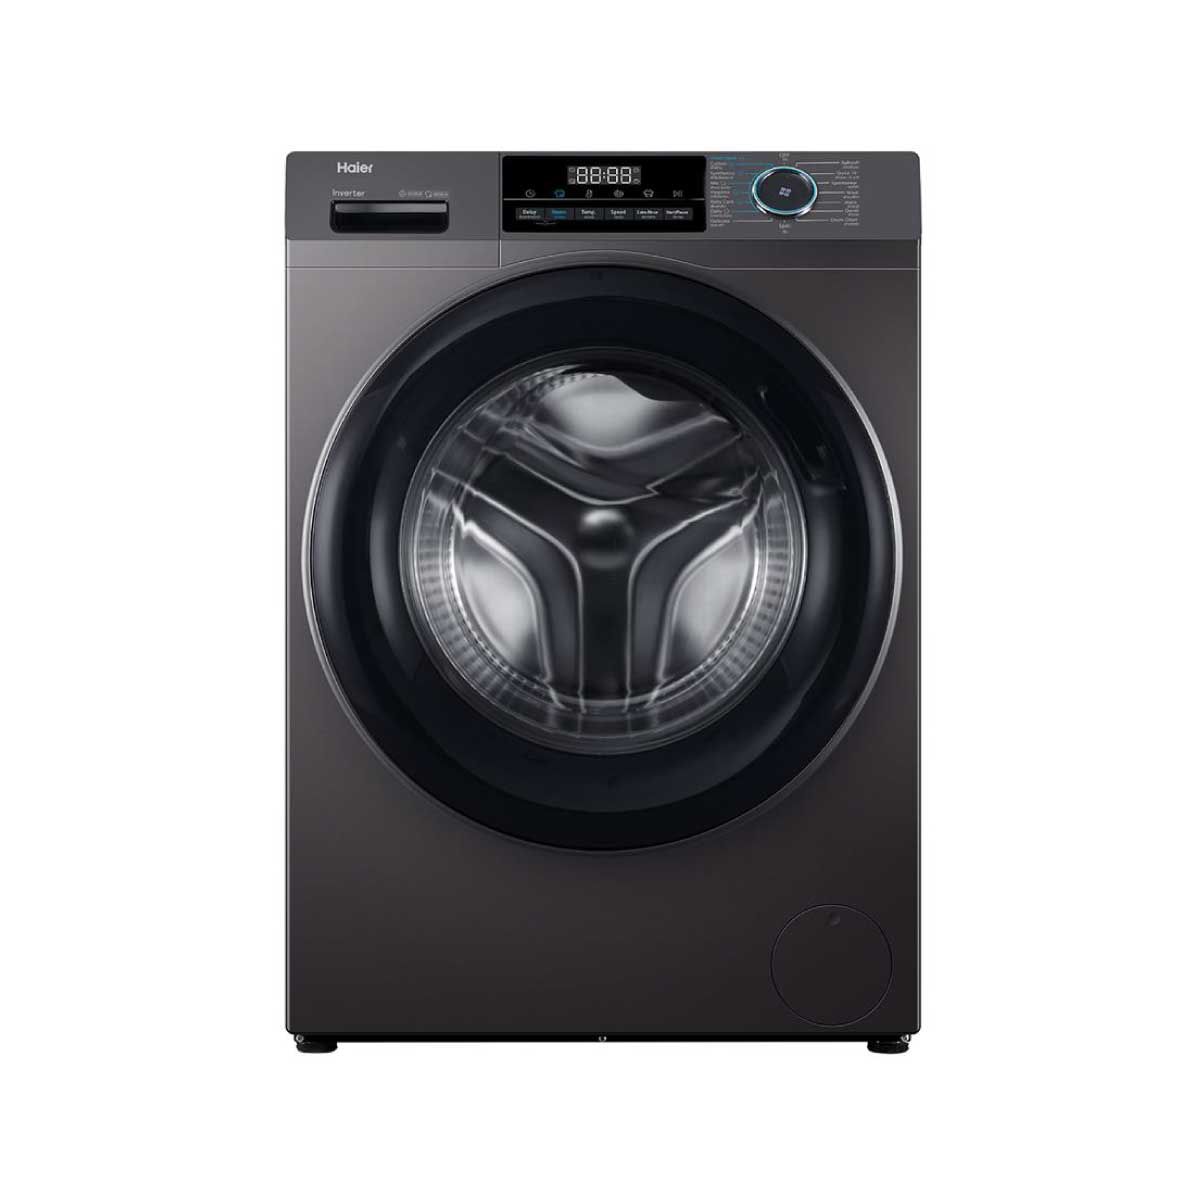 HAIER  เครื่องซักผ้าฝาหน้า 10.5Kg. สีดำ รุ่นHW105-BP14929AS6